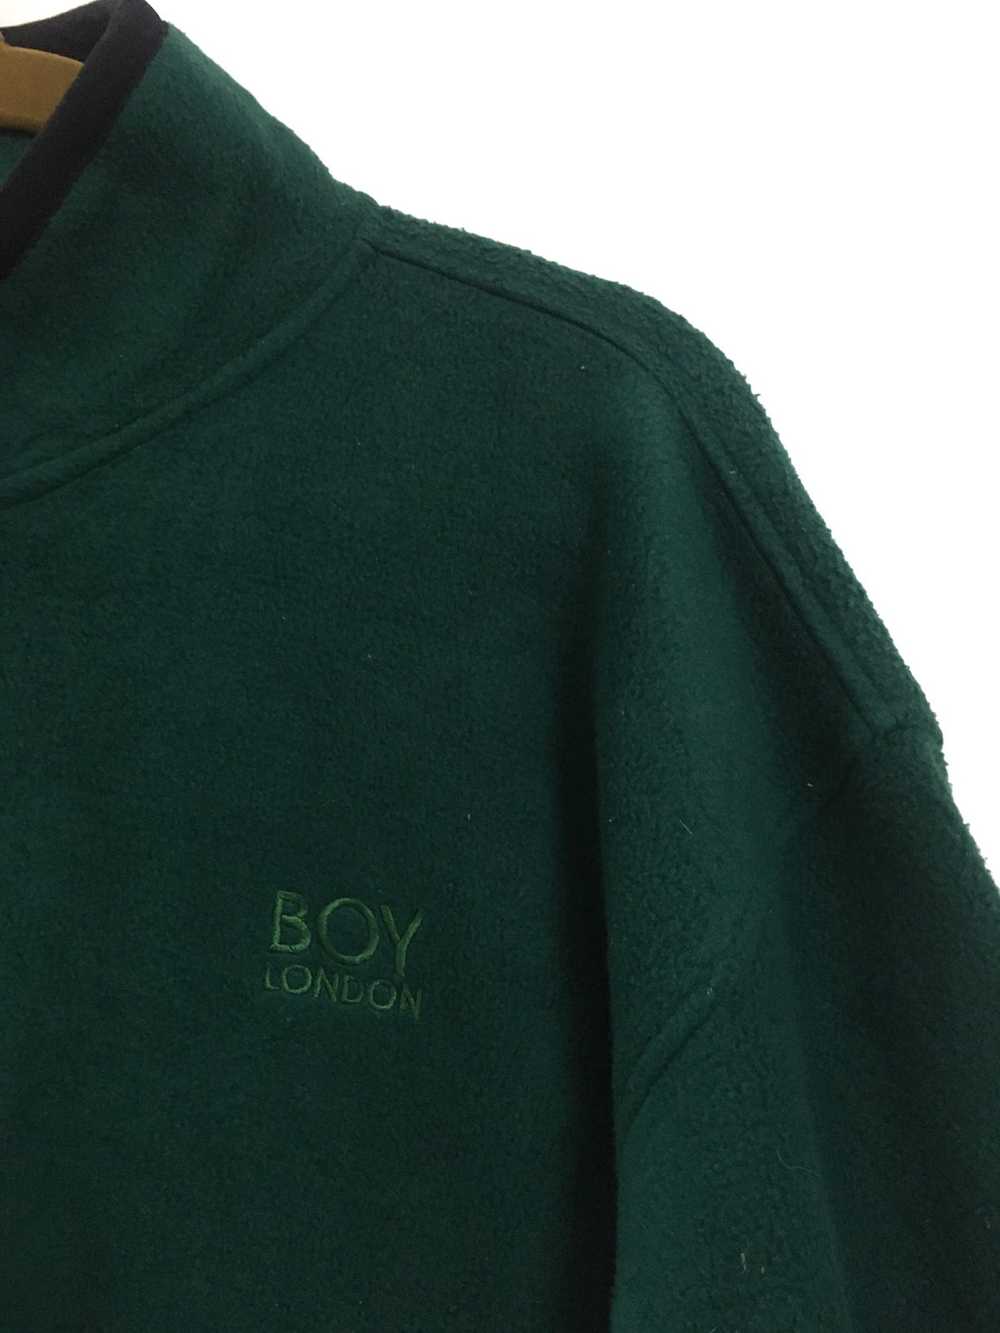 Boy London × Streetwear Boy London Fleece Sweater - image 4